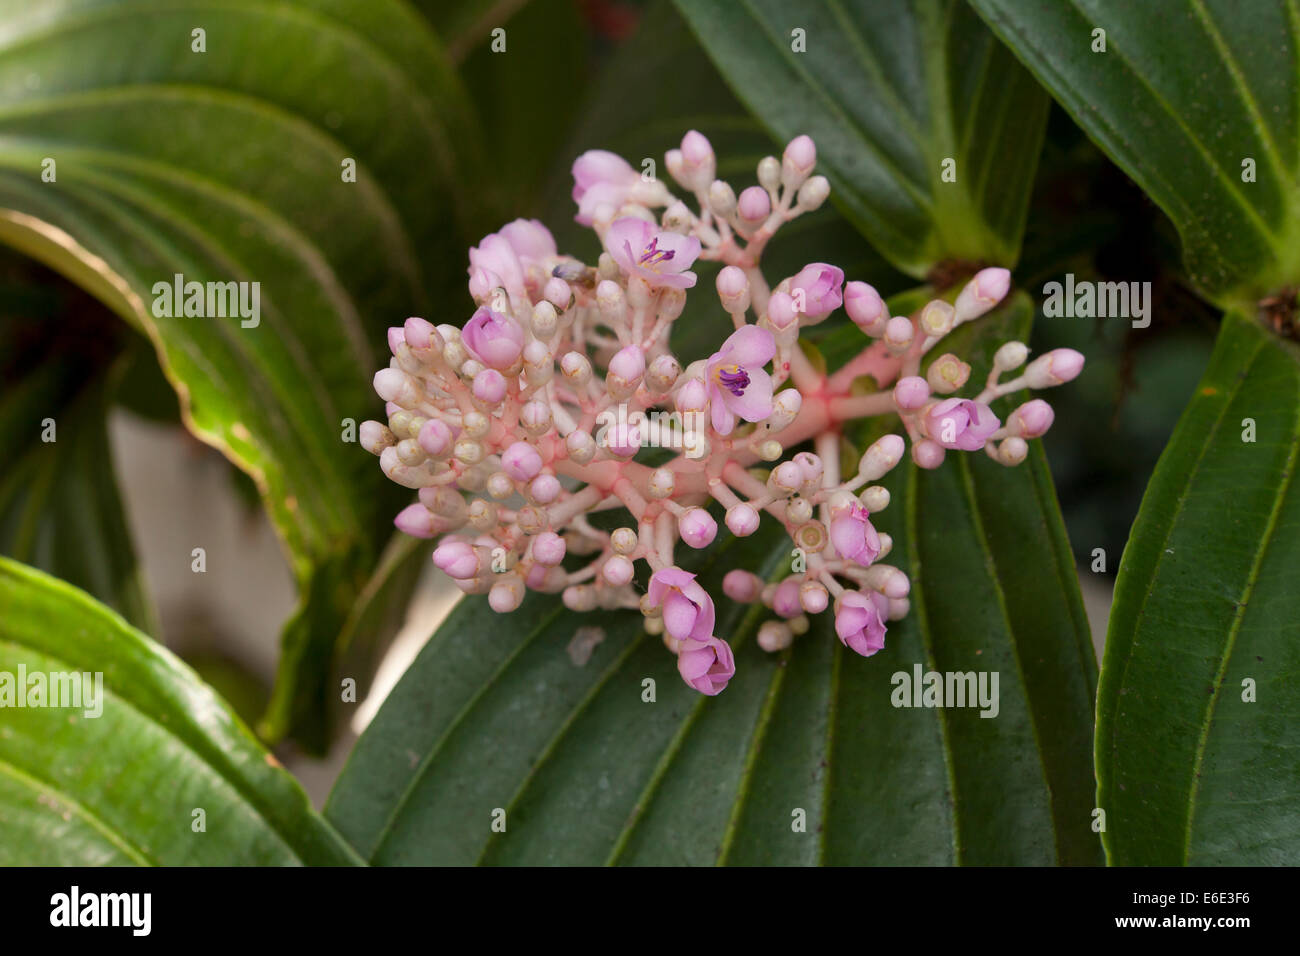 Melastome flowers (Medinilla myriantha) Stock Photo